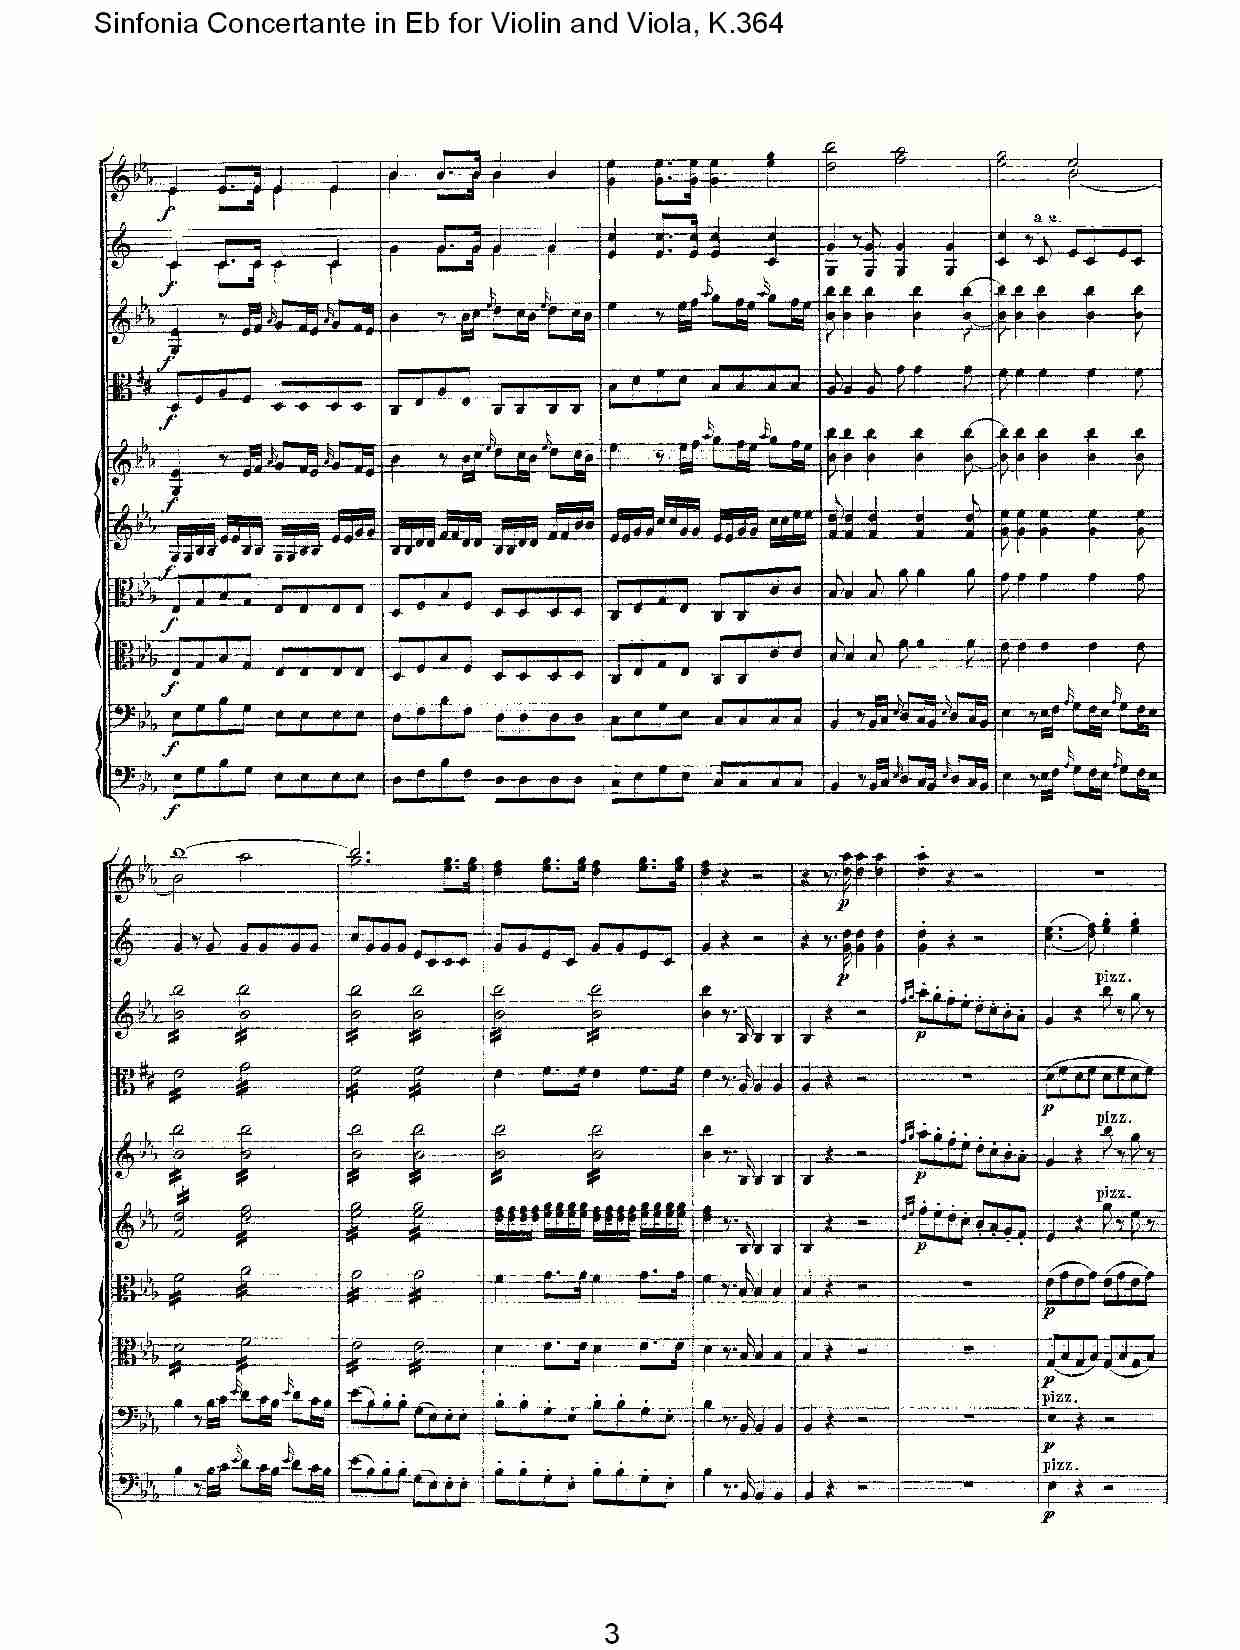 Eb调小提琴与中提琴炫技序曲, K.364（一）总谱（图3）